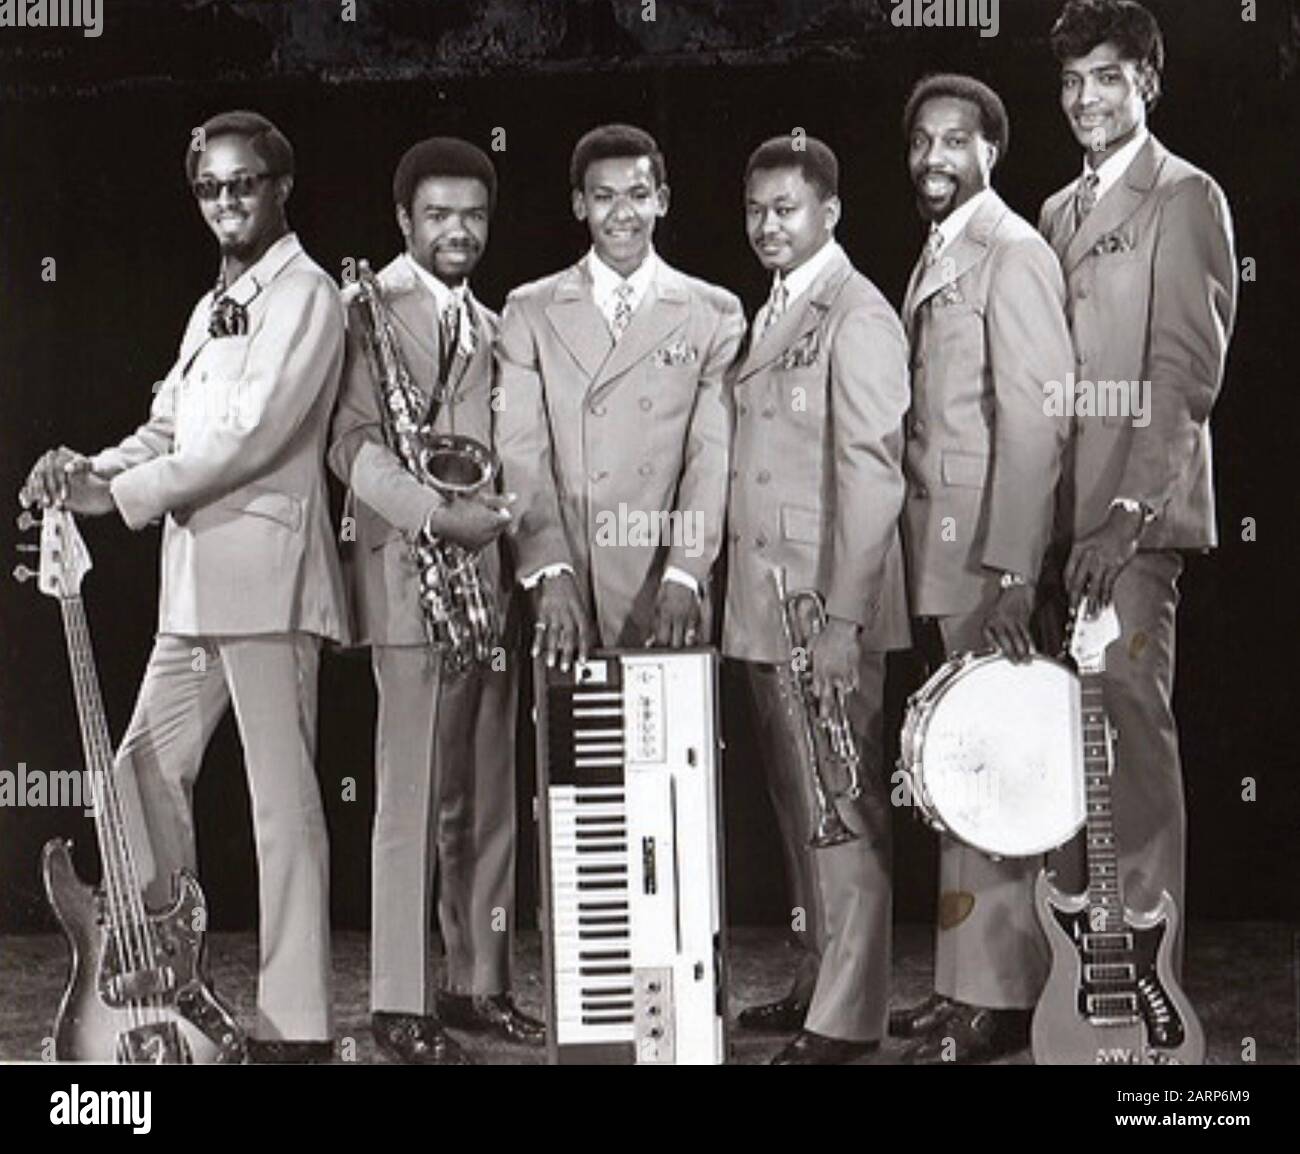 Steve JORDAN UND THE INVASDERS Promotional Photo der amerikanischen Popgruppe über 1968 Stockfoto